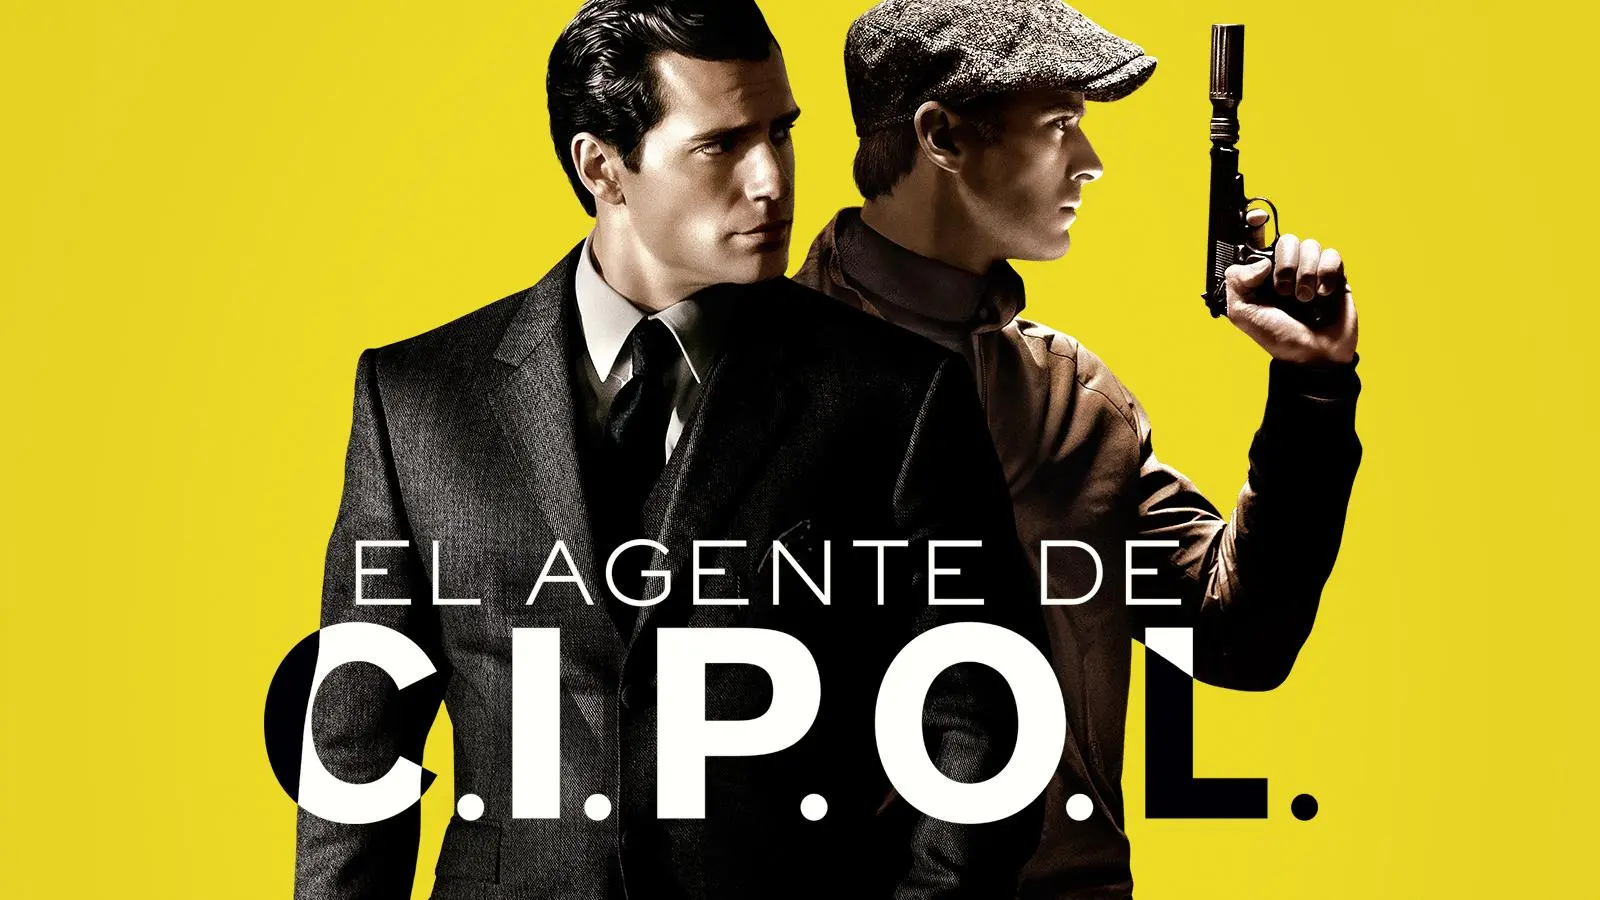 EL AGENTE DE C.I.P.O.L. - Tráiler 2 - Oficial Warner Bros. Pictures_peliplat